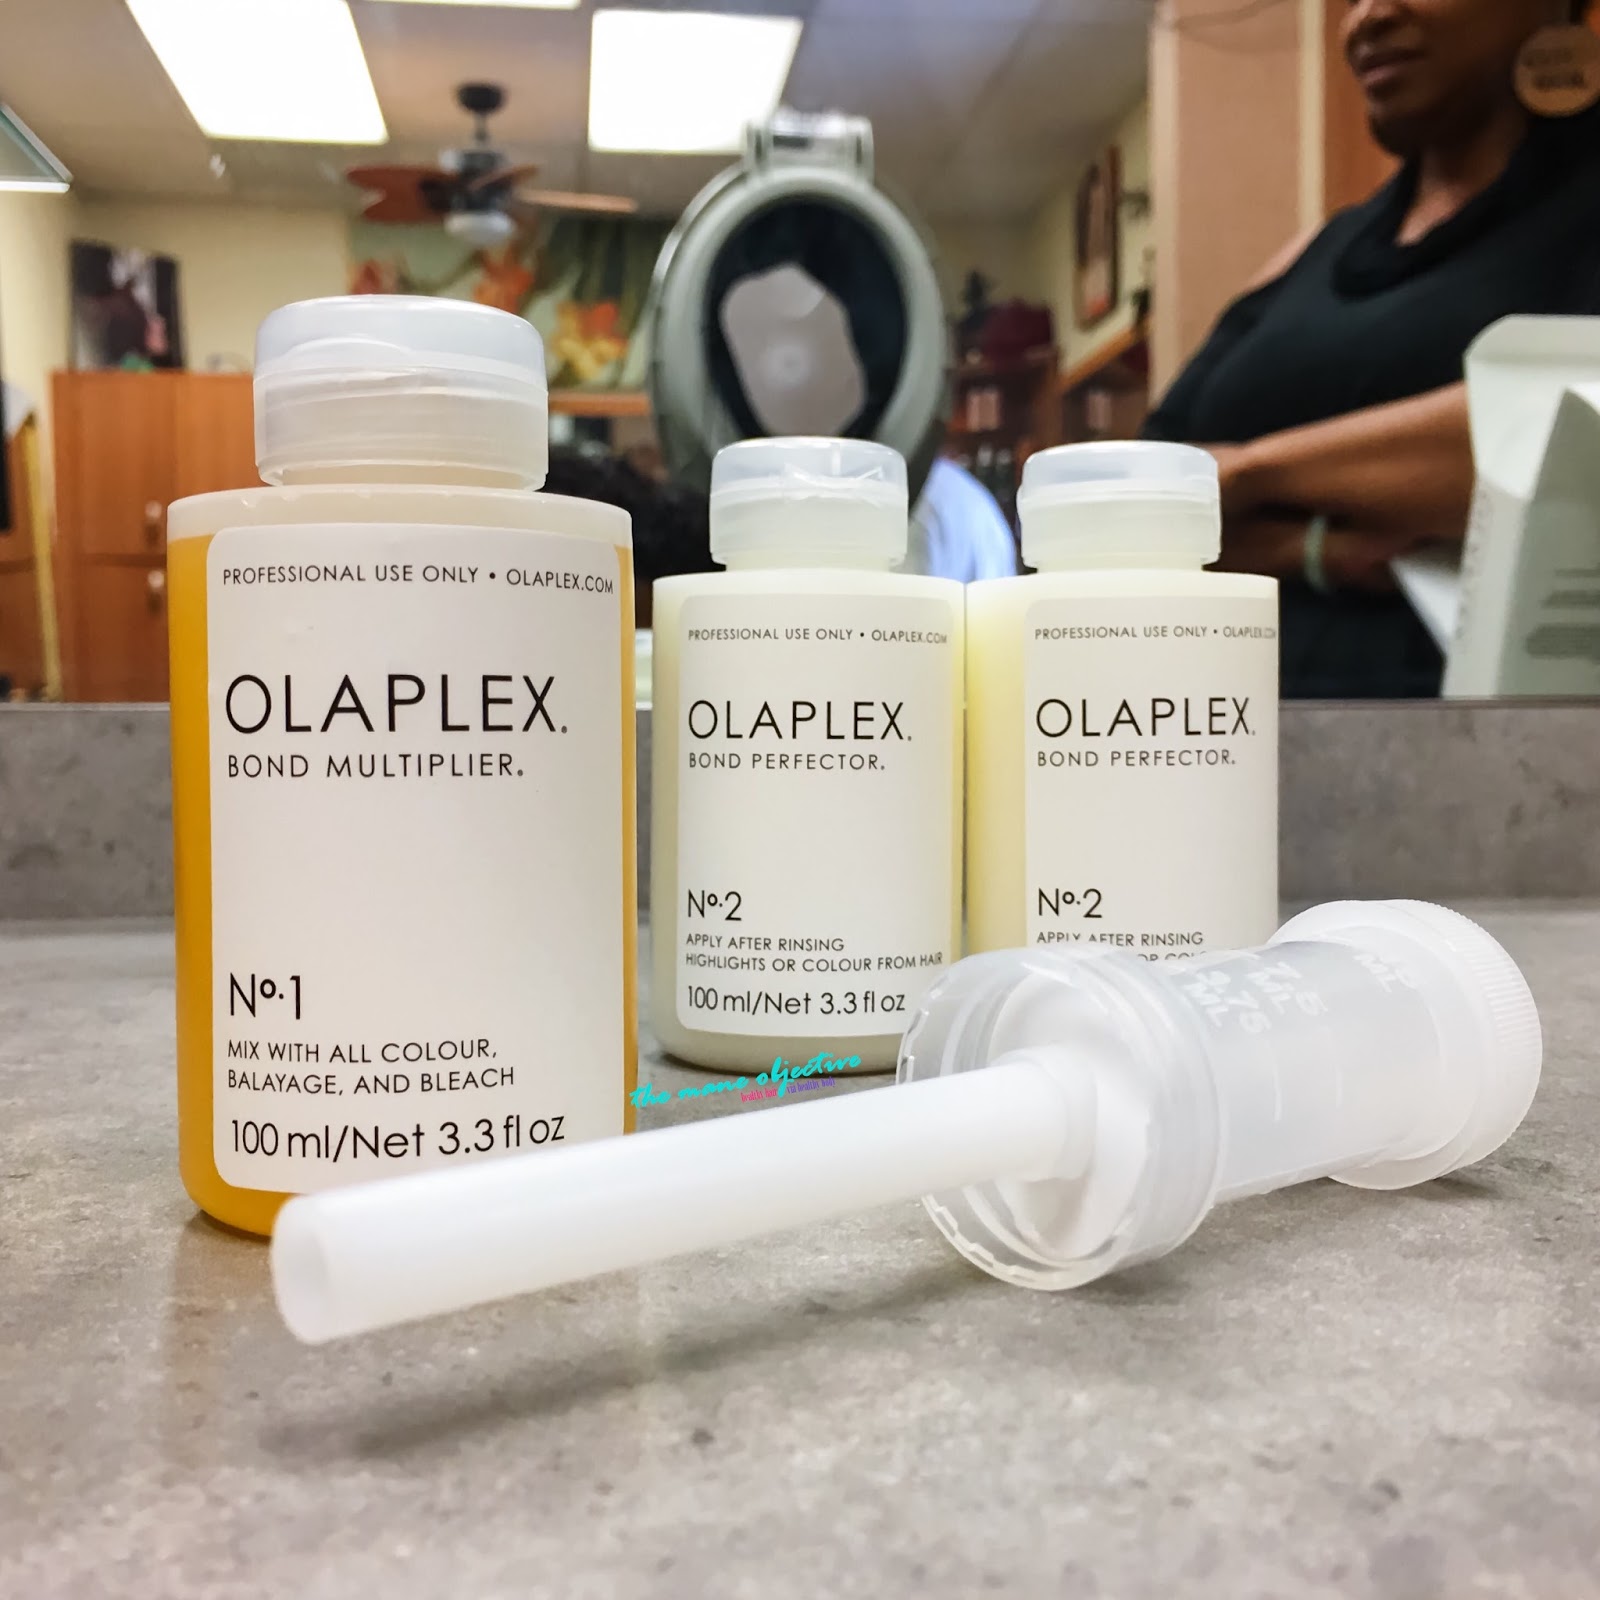 Does Olaplex Work On Natural Hair